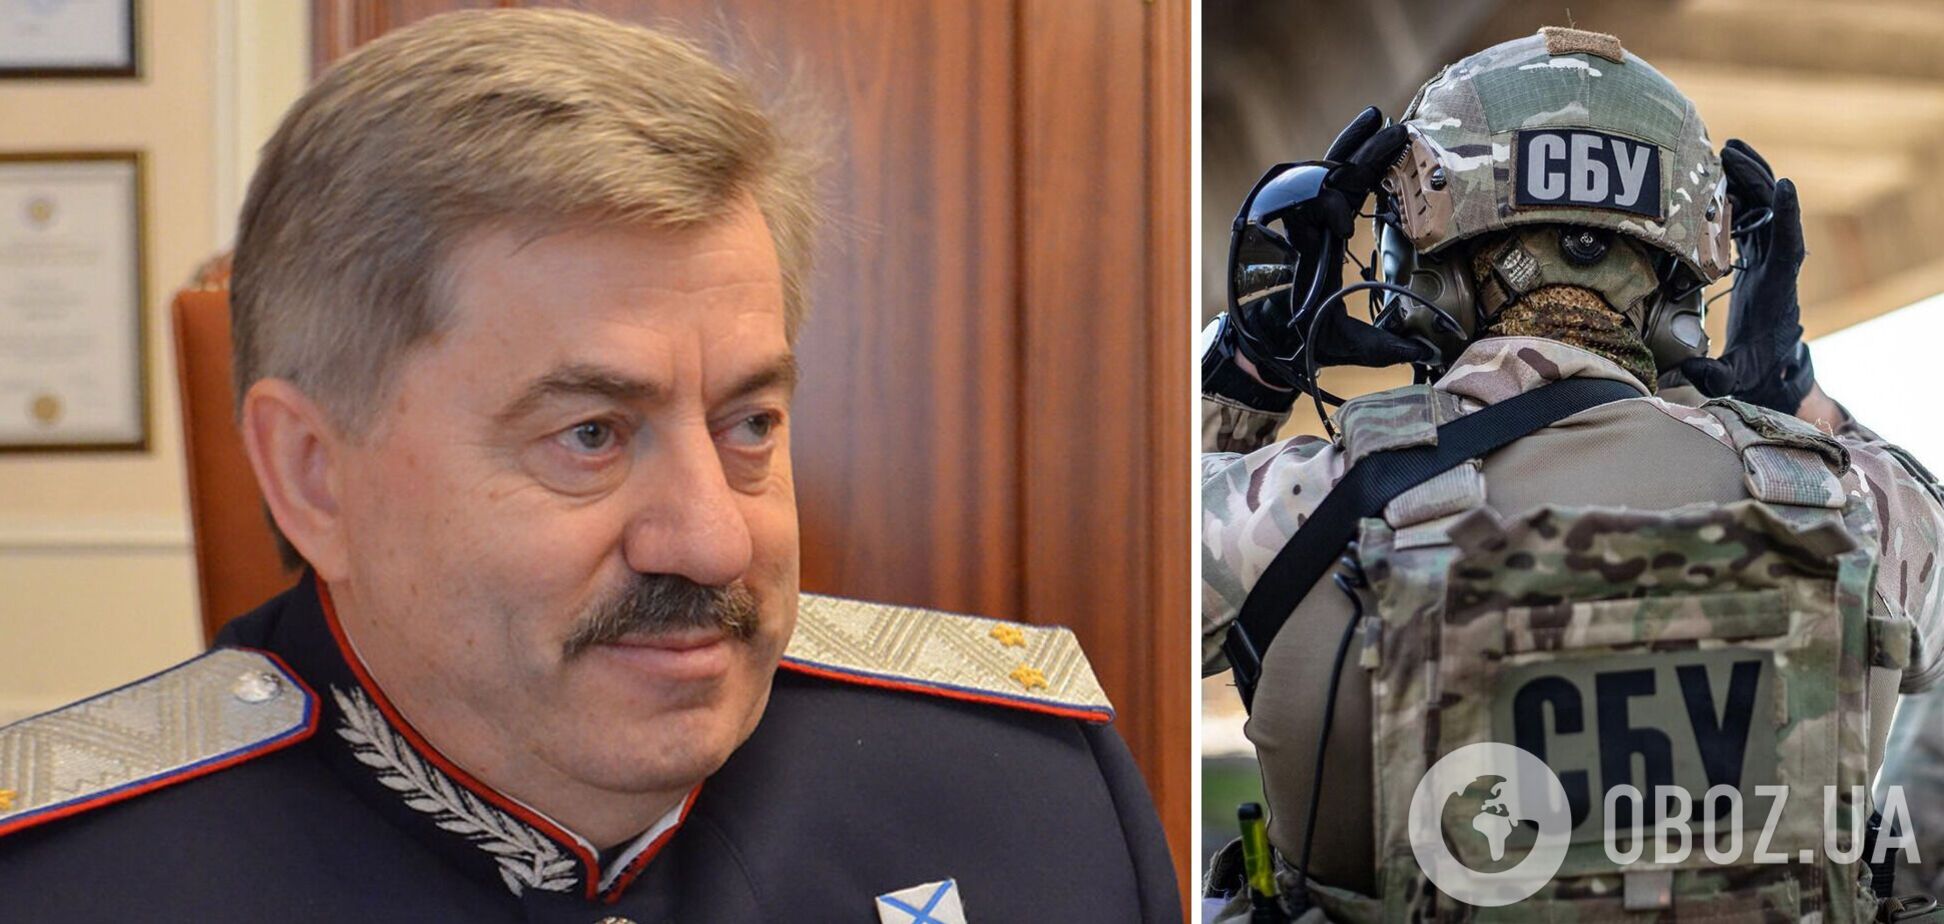 СБУ повідомила про підозру депутату Держдуми РФ, який піарився під час артобстрілу Луганщини  